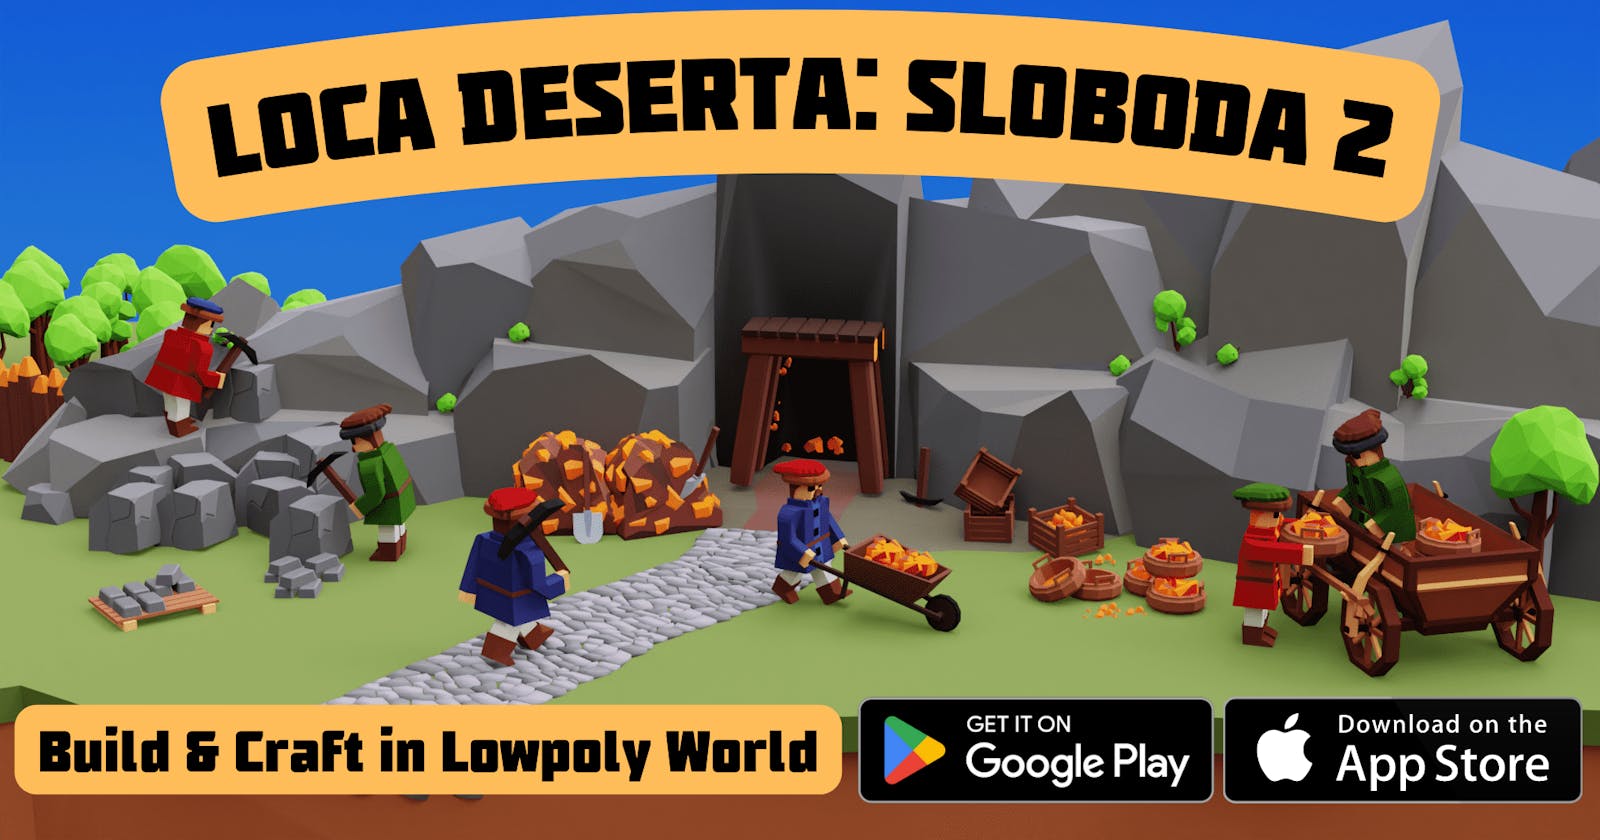 Loca Deserta: Sloboda 2 Release!